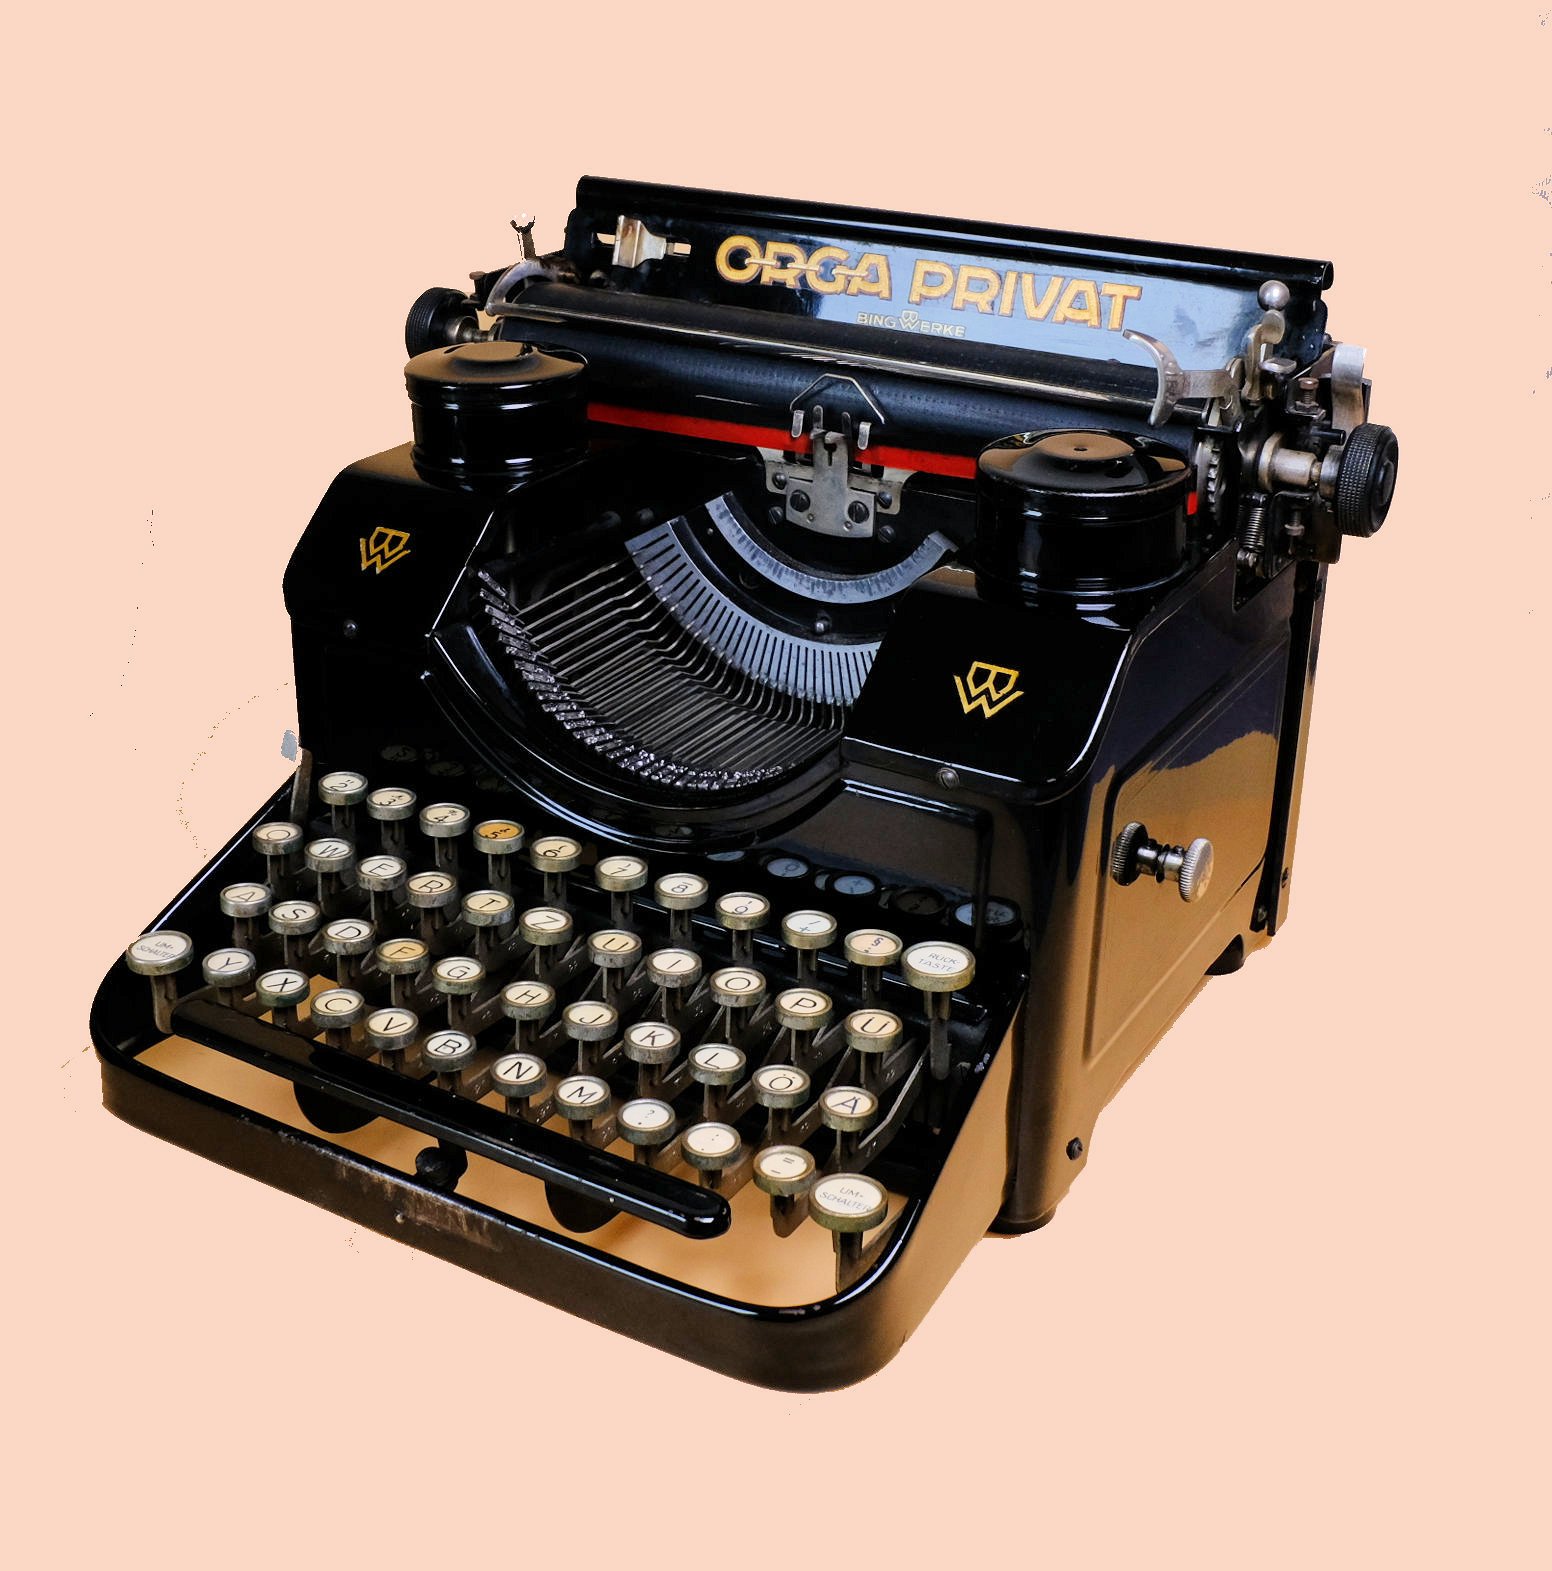 Büroschreibmaschine Orga Privat Mod. 4 (Volkskunde- und Freilichtmuseum Roscheider Hof CC0)